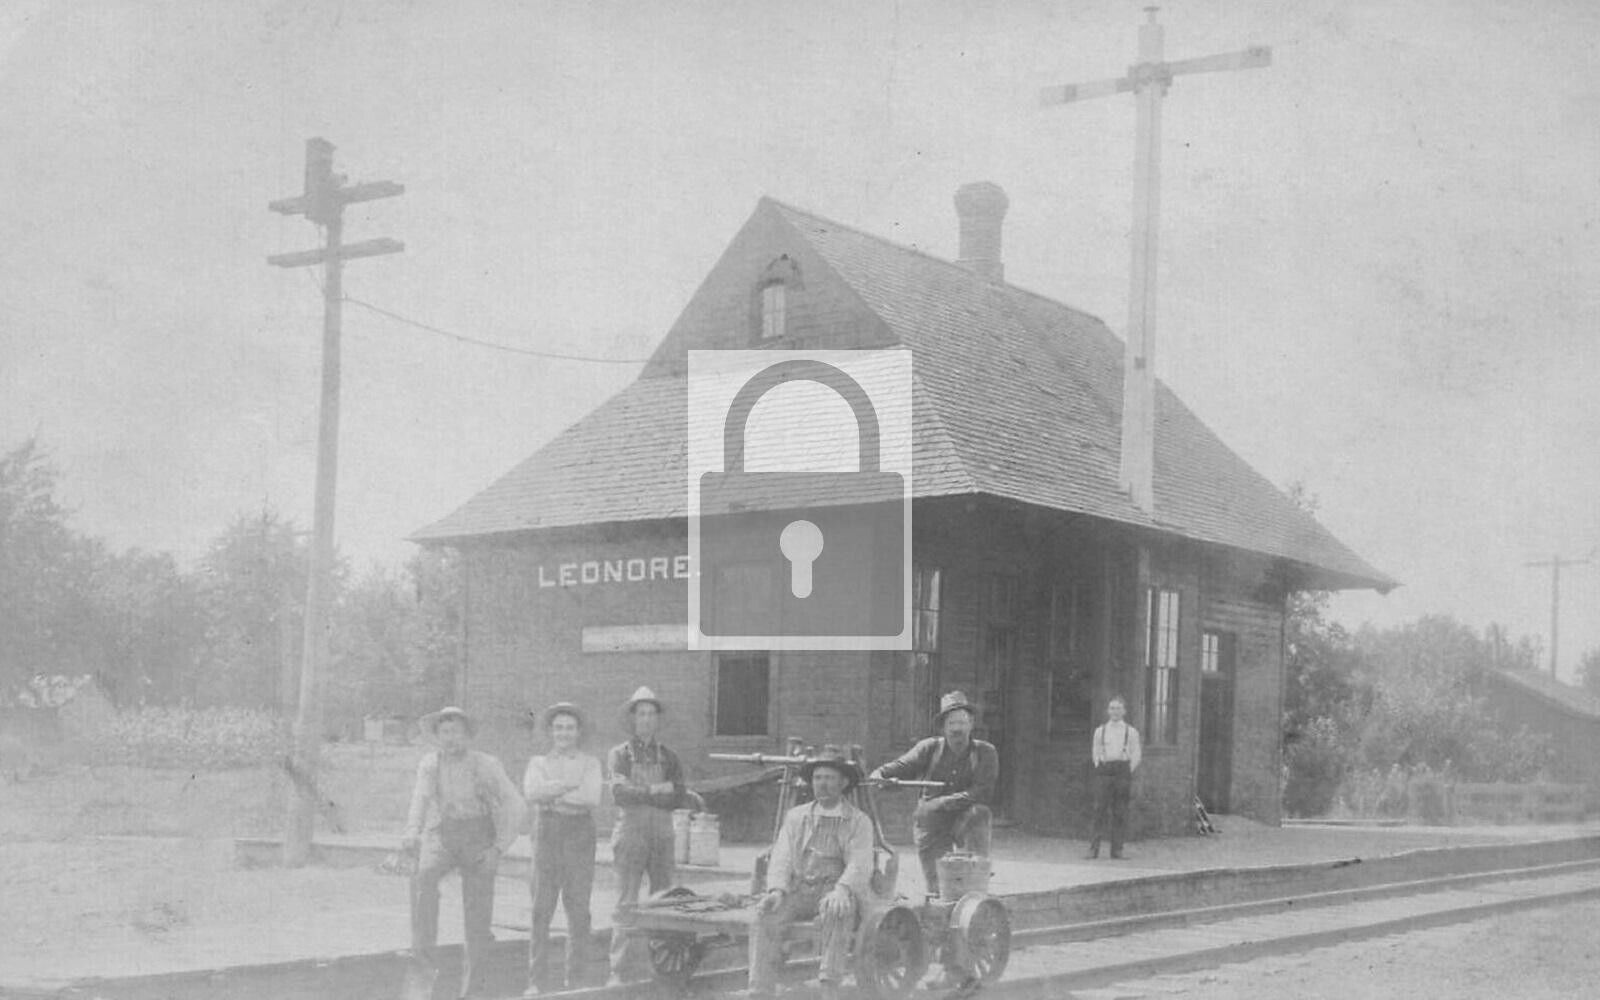 Railroad Train Station Depot Handcar Leonore Illinois IL - 8x10 Reprint